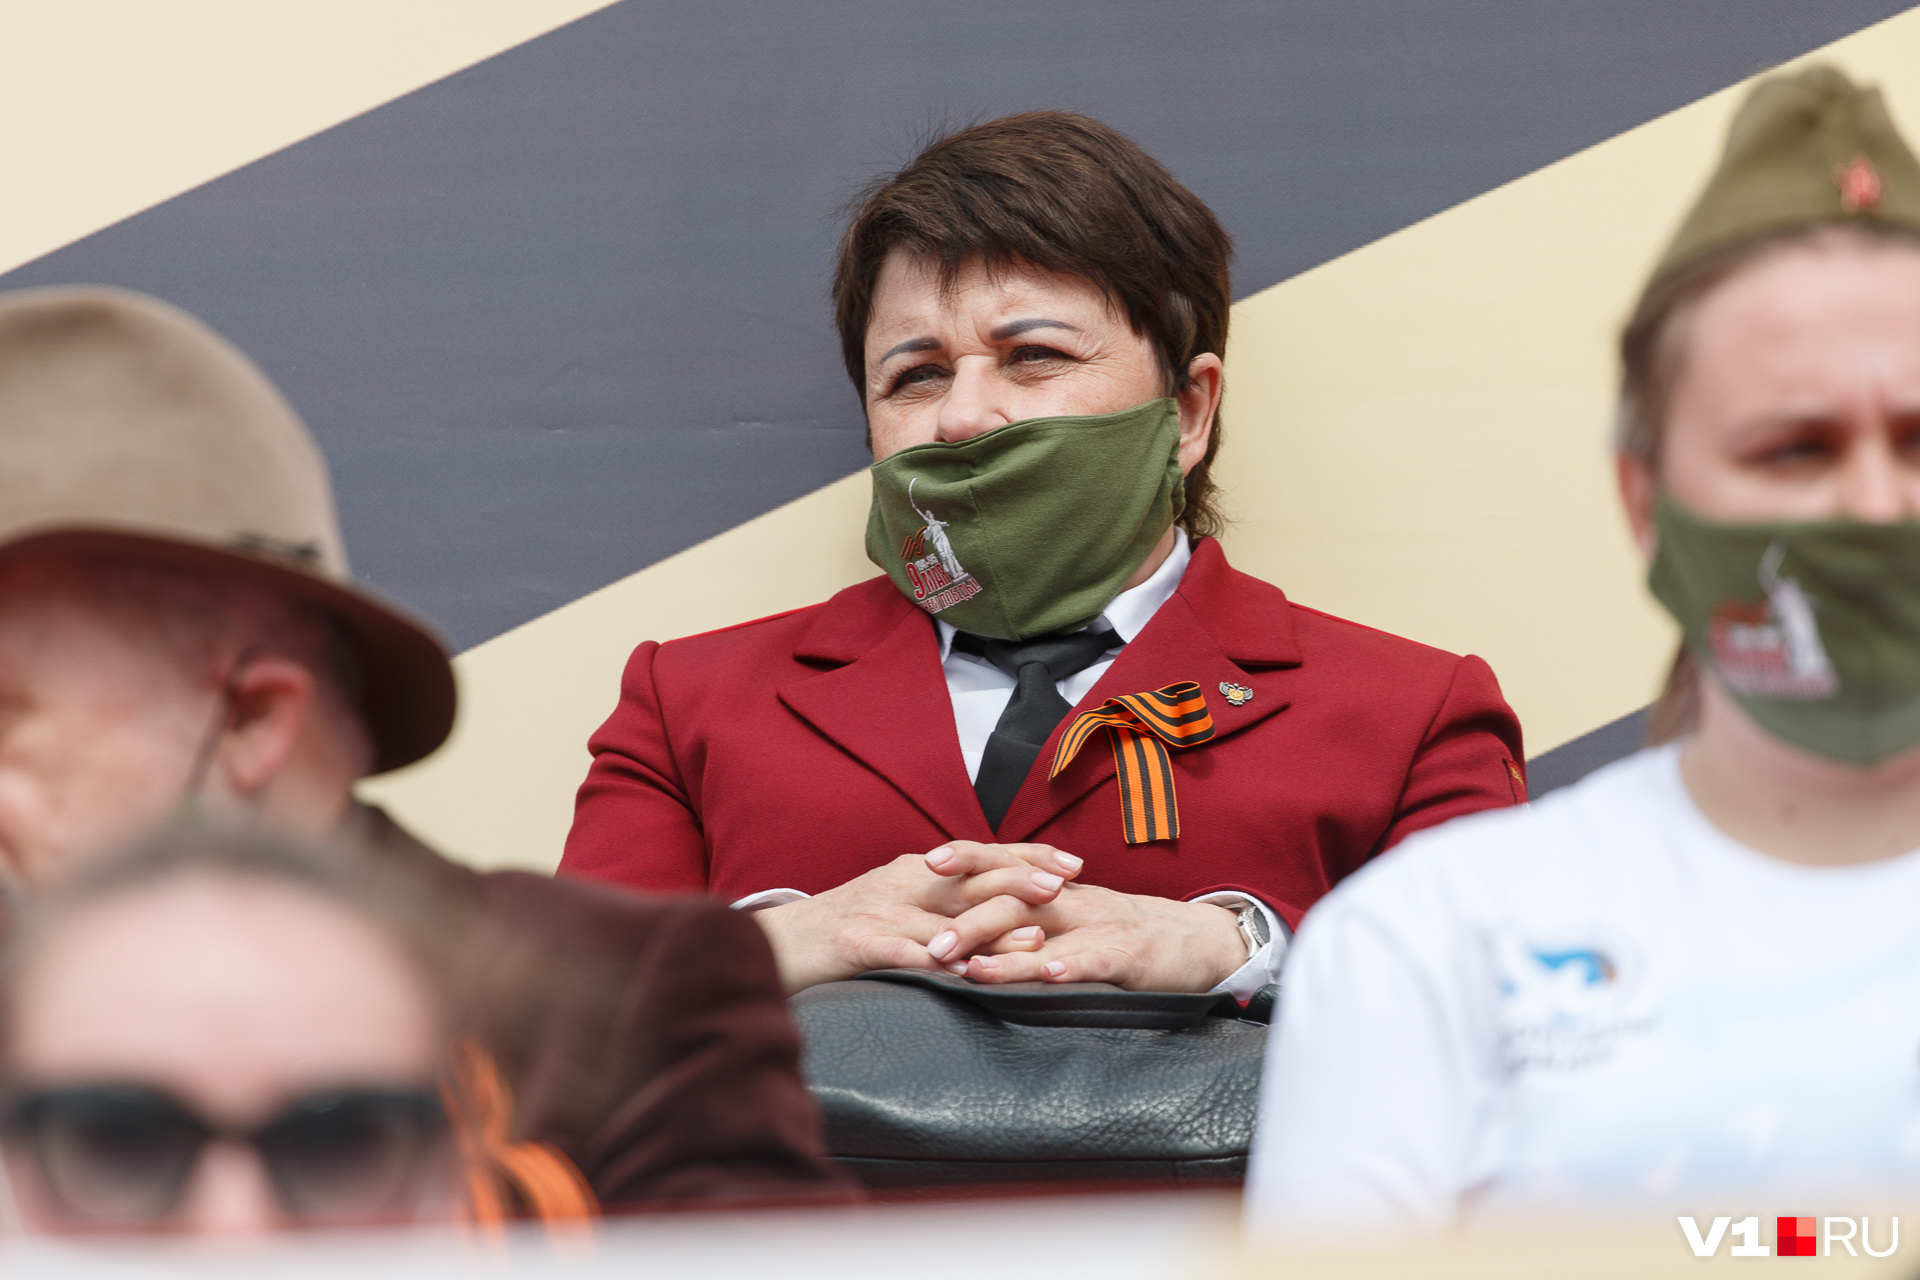 Сама Ольга Зубарева, находясь 9 мая на параде Победы, надевала маску не так, как того требуют правила